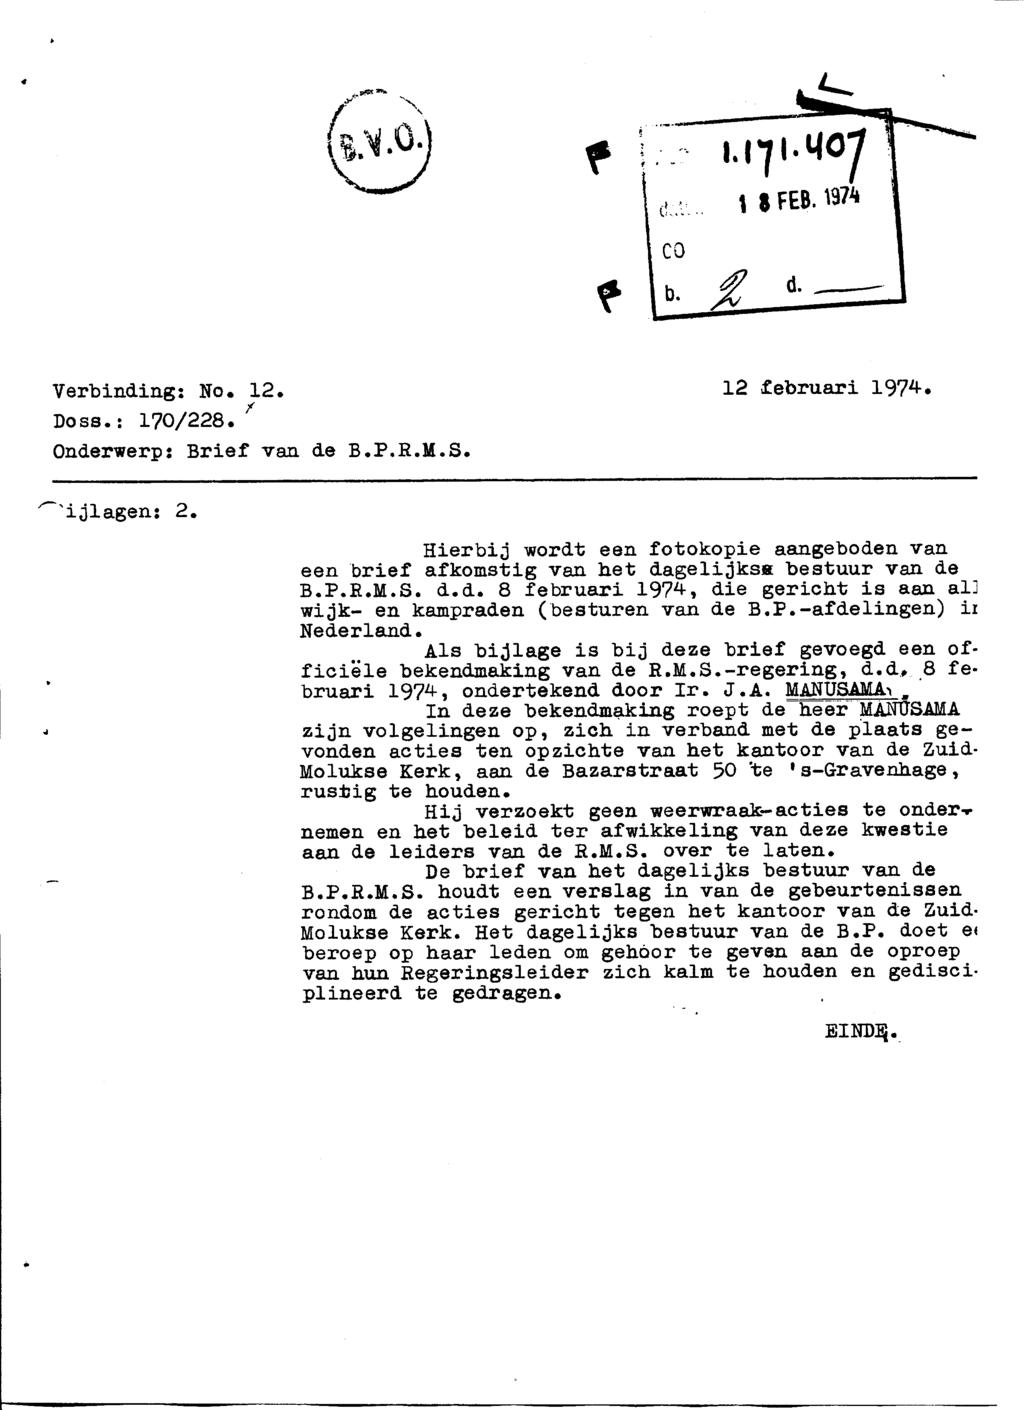 Verbinding: No. 12. Doss.: 170/228. Onderwerp: Brief van de B.P.R.M.S. 12 februari 1974.